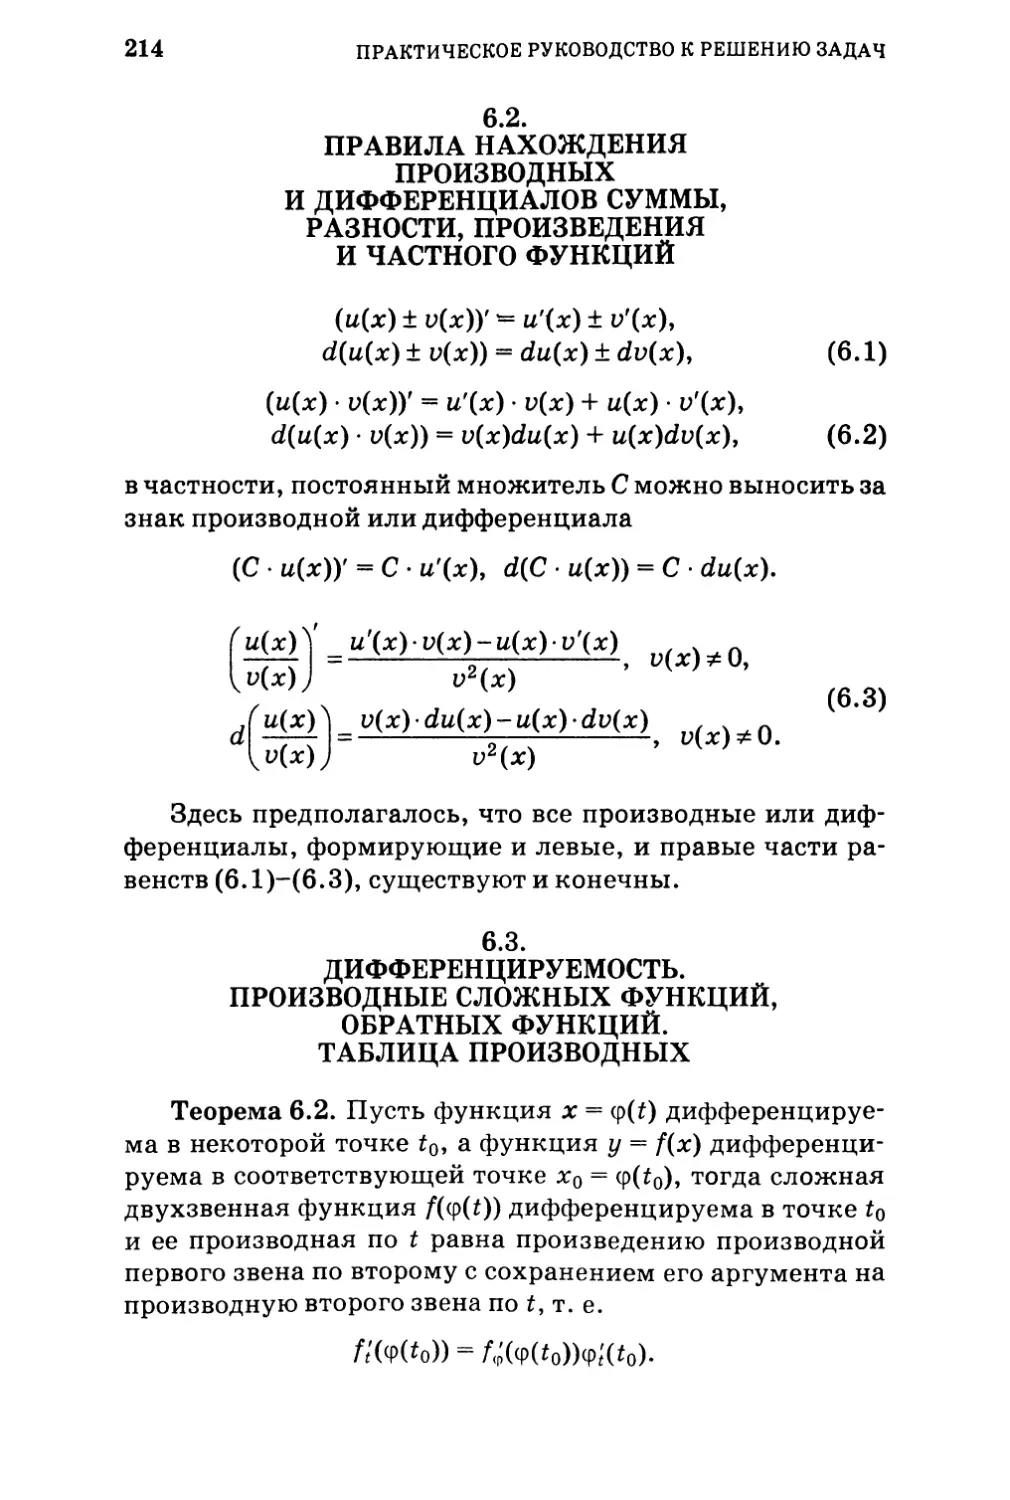 6.2.  Правила нахождения производных и дифференциалов суммы, разности, произведения и частного функций 
6.3.  Дифференцируемость. Производные сложных функций, обратных функций. Таблица производных.